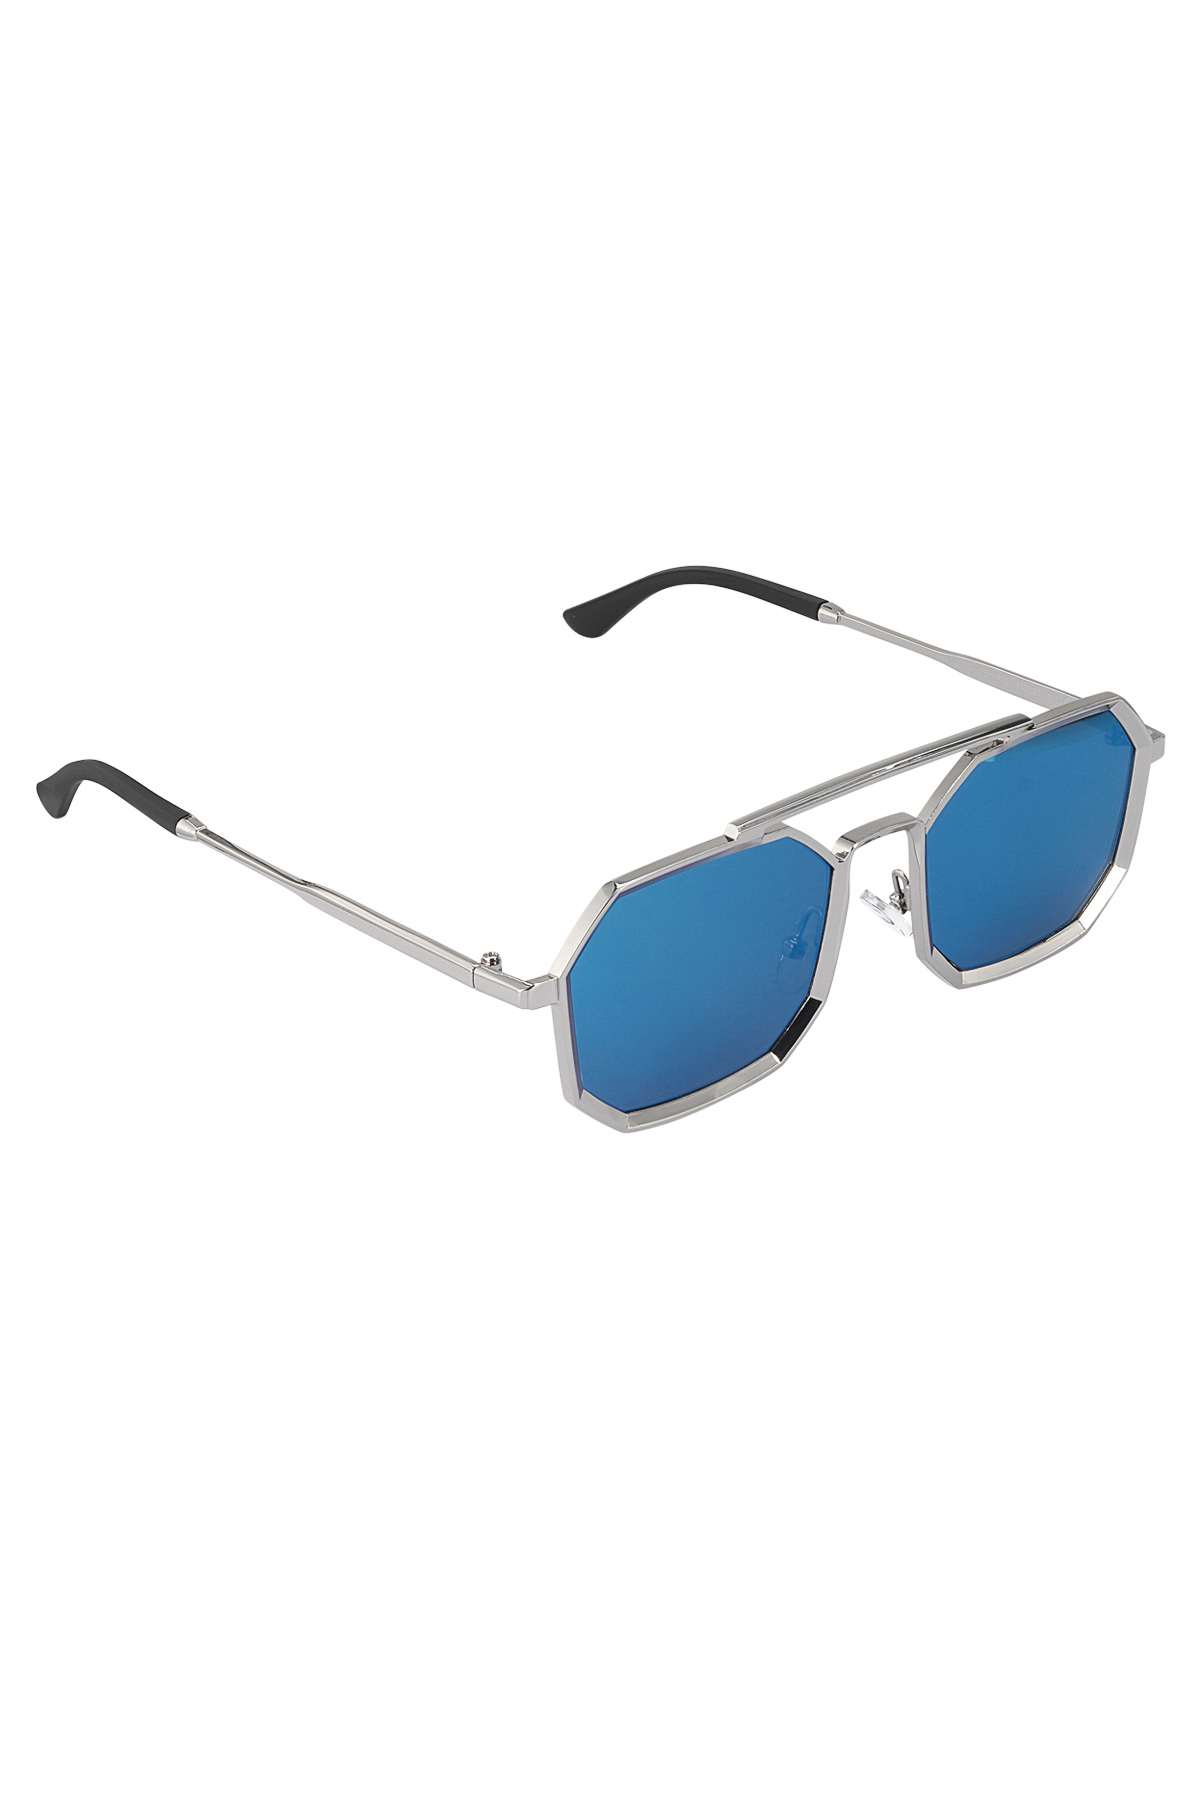 Gafas de sol LuminLens - azul plateado